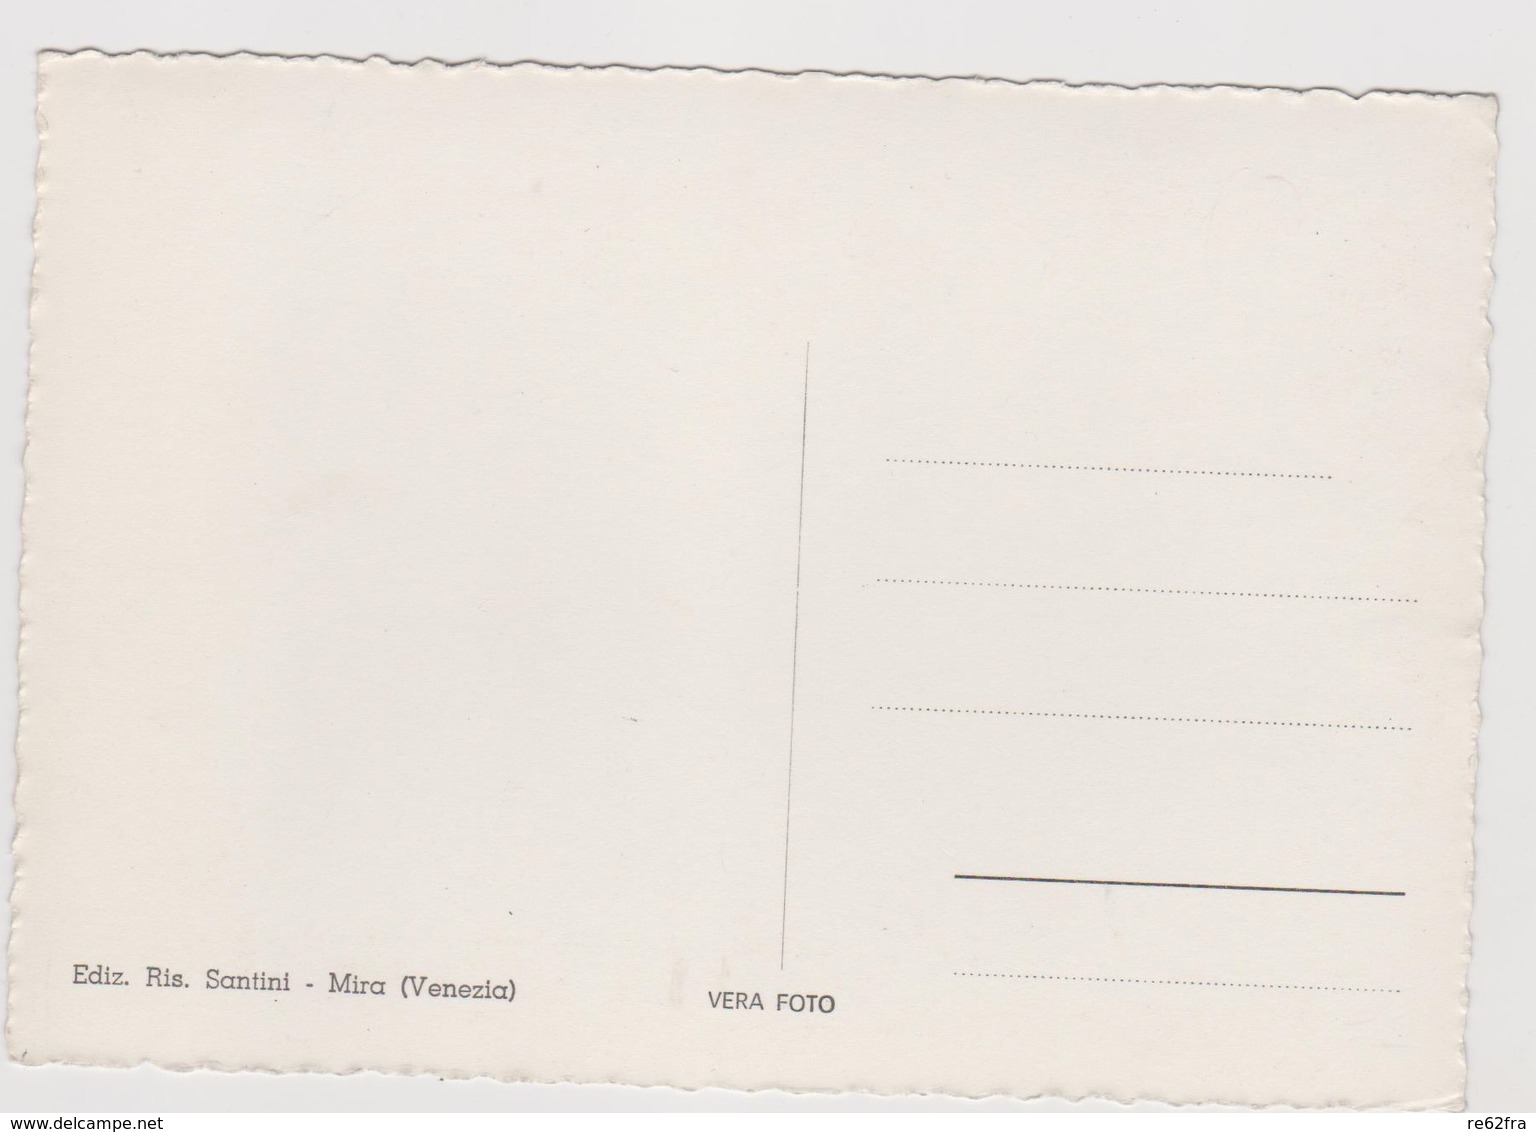 MIRA-ORIAGO (VE)   Lotto 10 cartoline differenti  - F.G. - anni  '1950